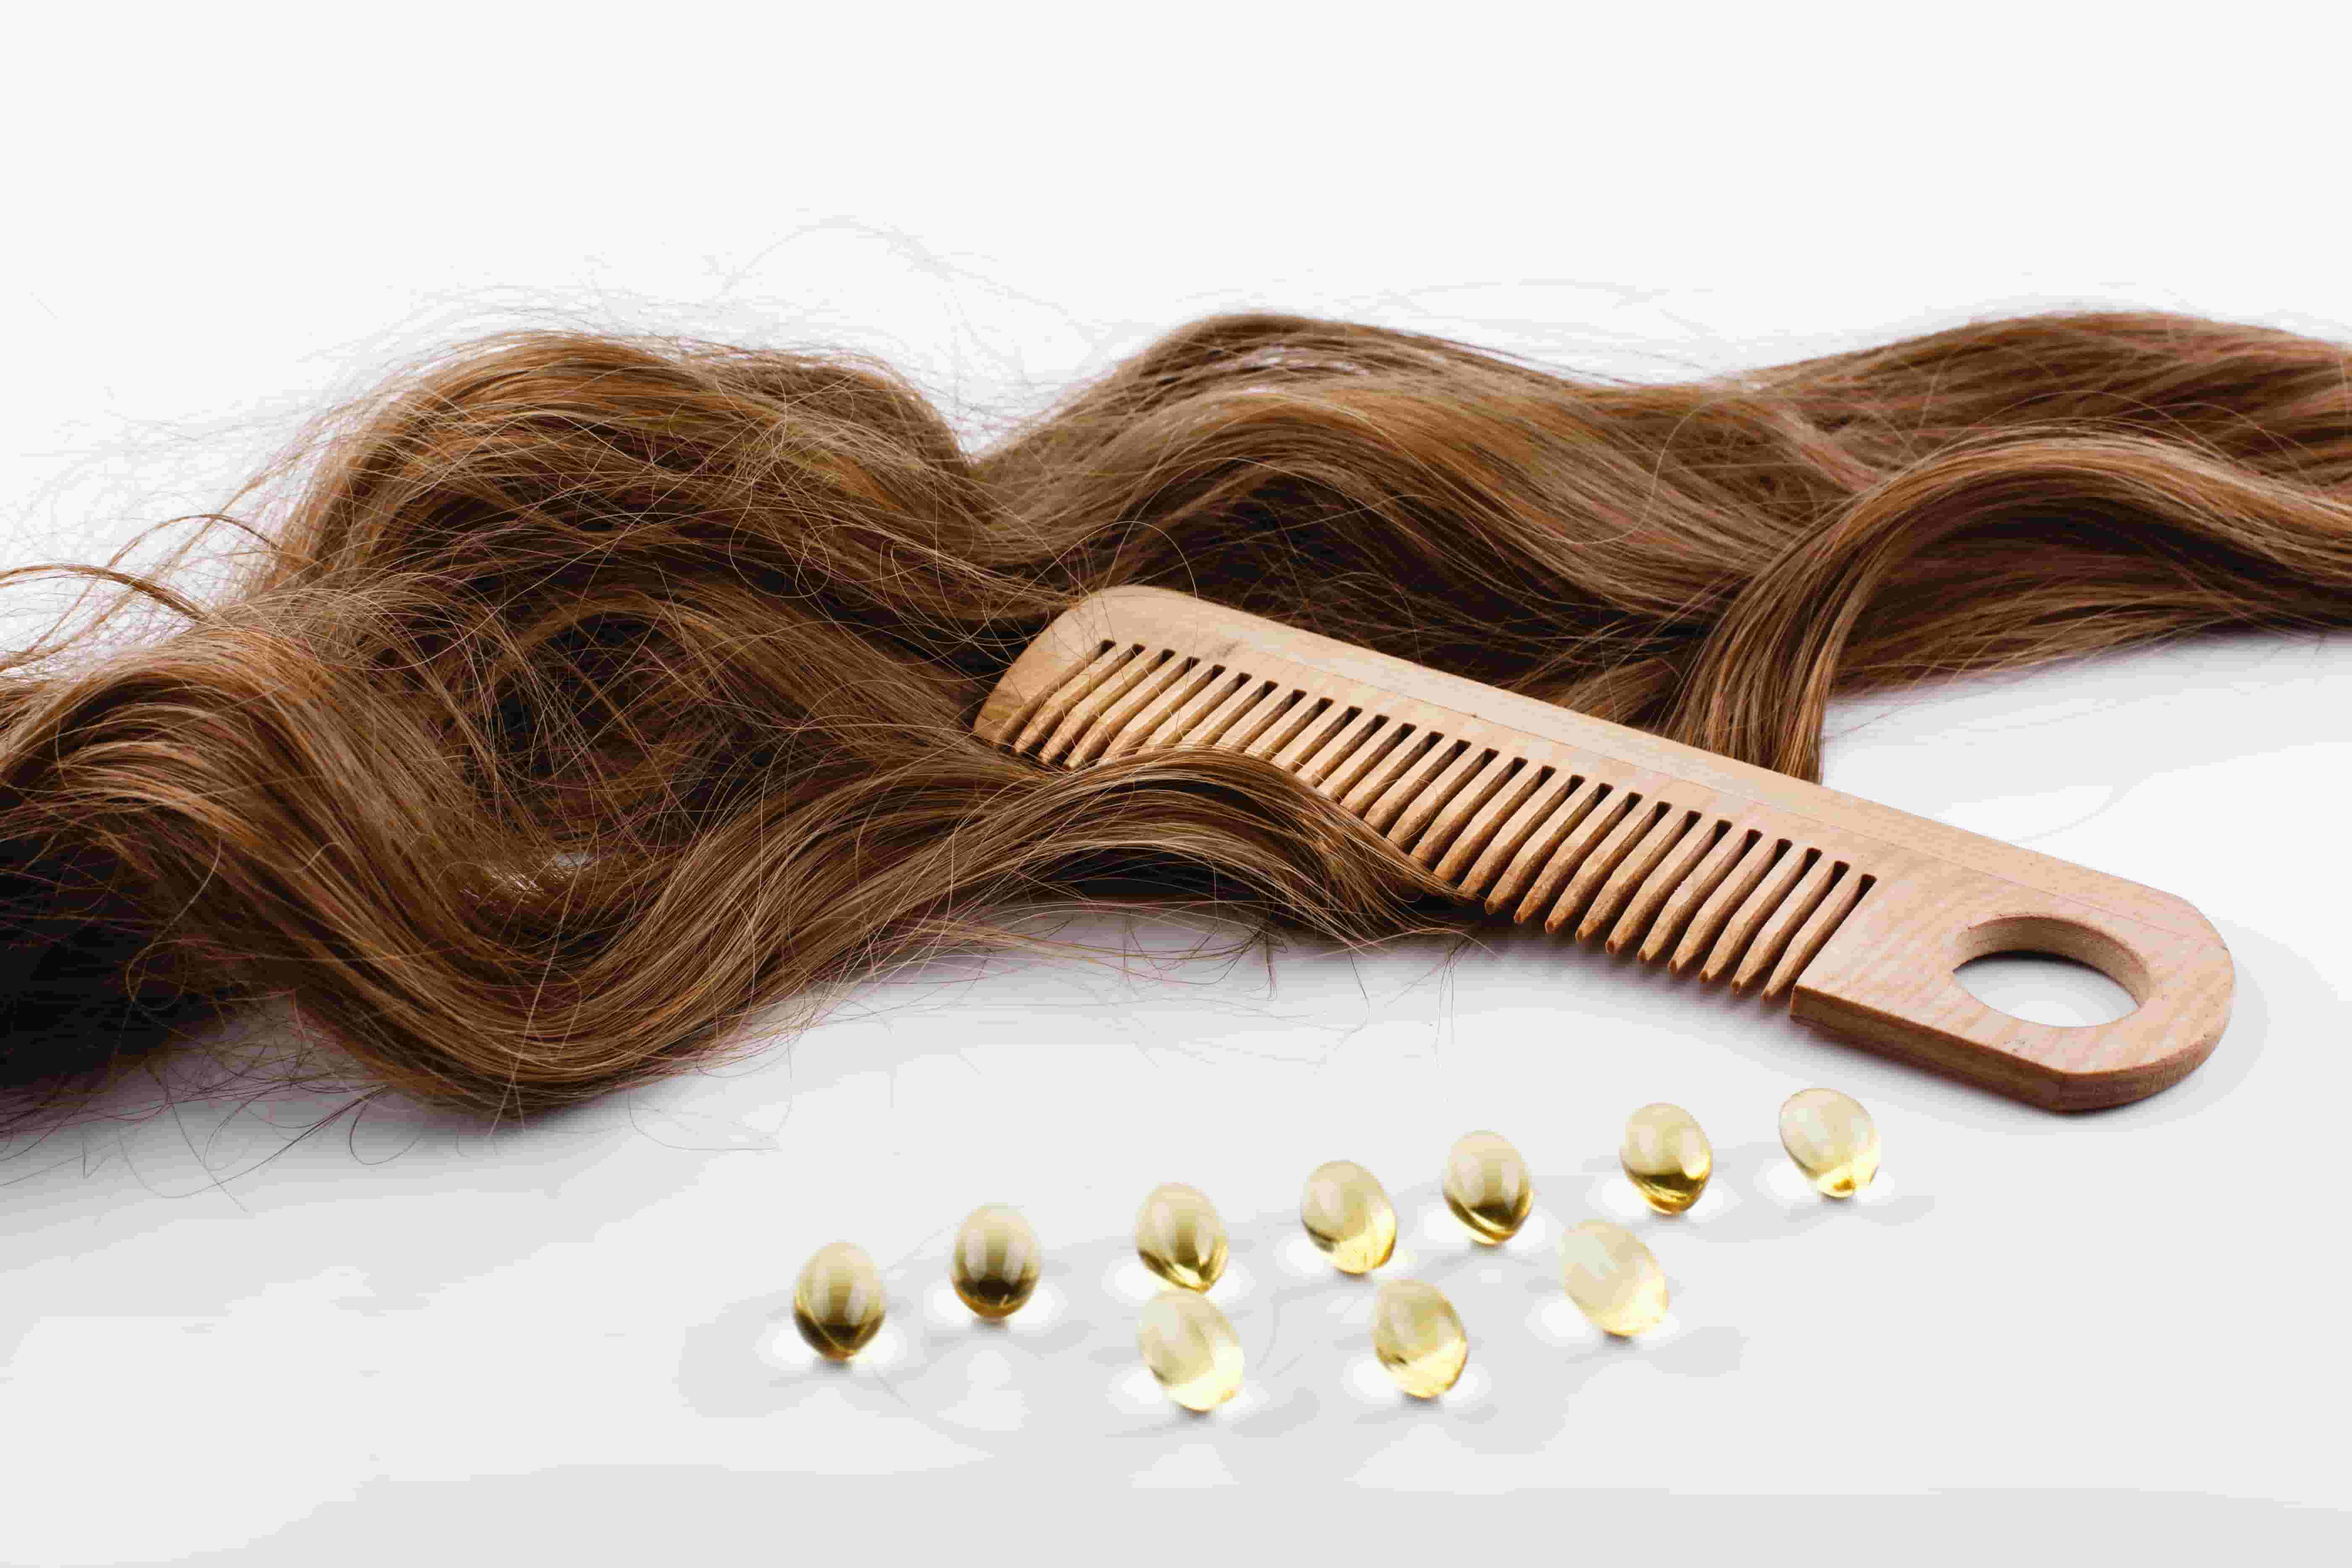 Биоревитализация волос